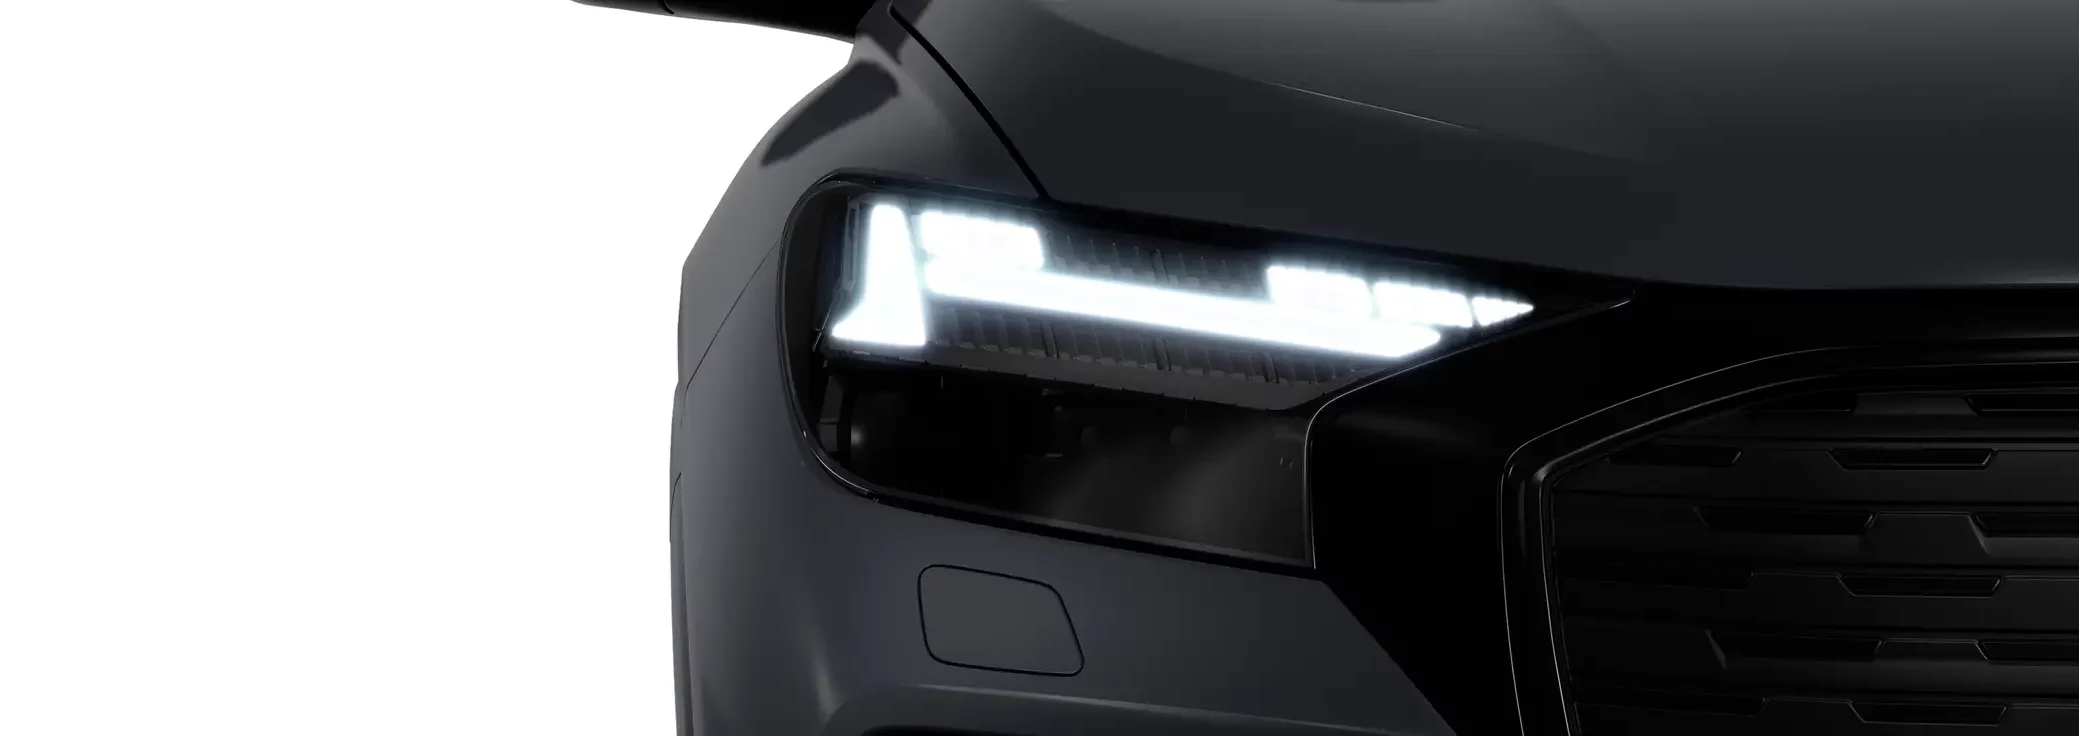 Audi Q4 Sportback e-tron headlight